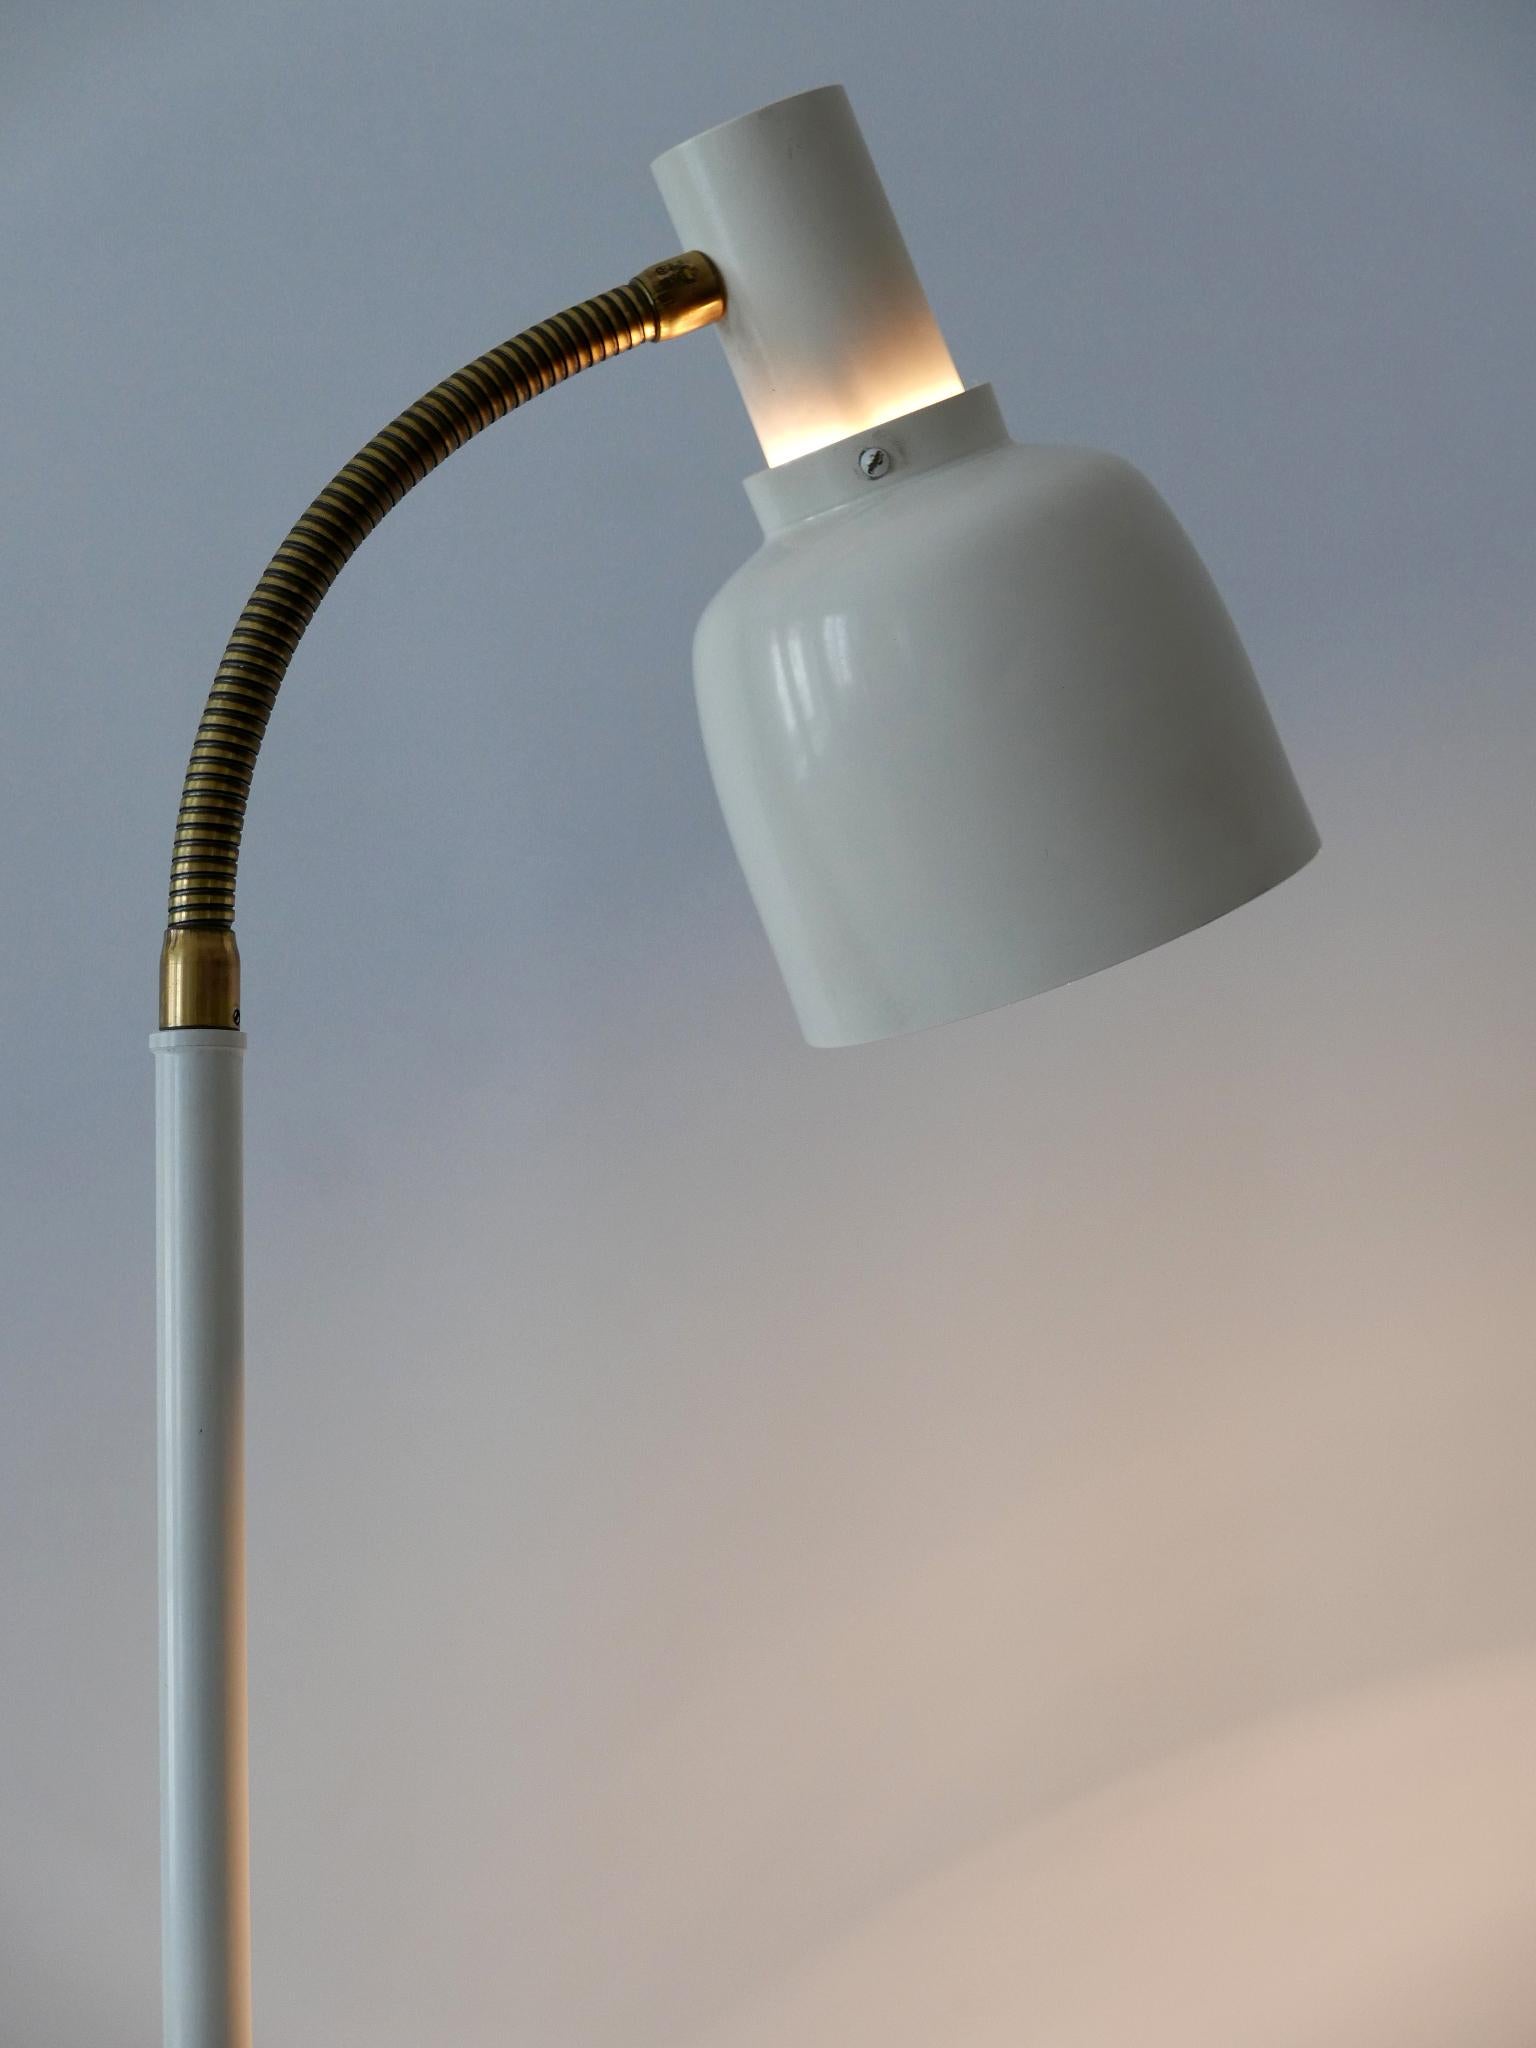 Enameled Rare Mid-Century Modern Floor Lamp or Reading Light by Hans-Agne Jakobsson 1960s For Sale